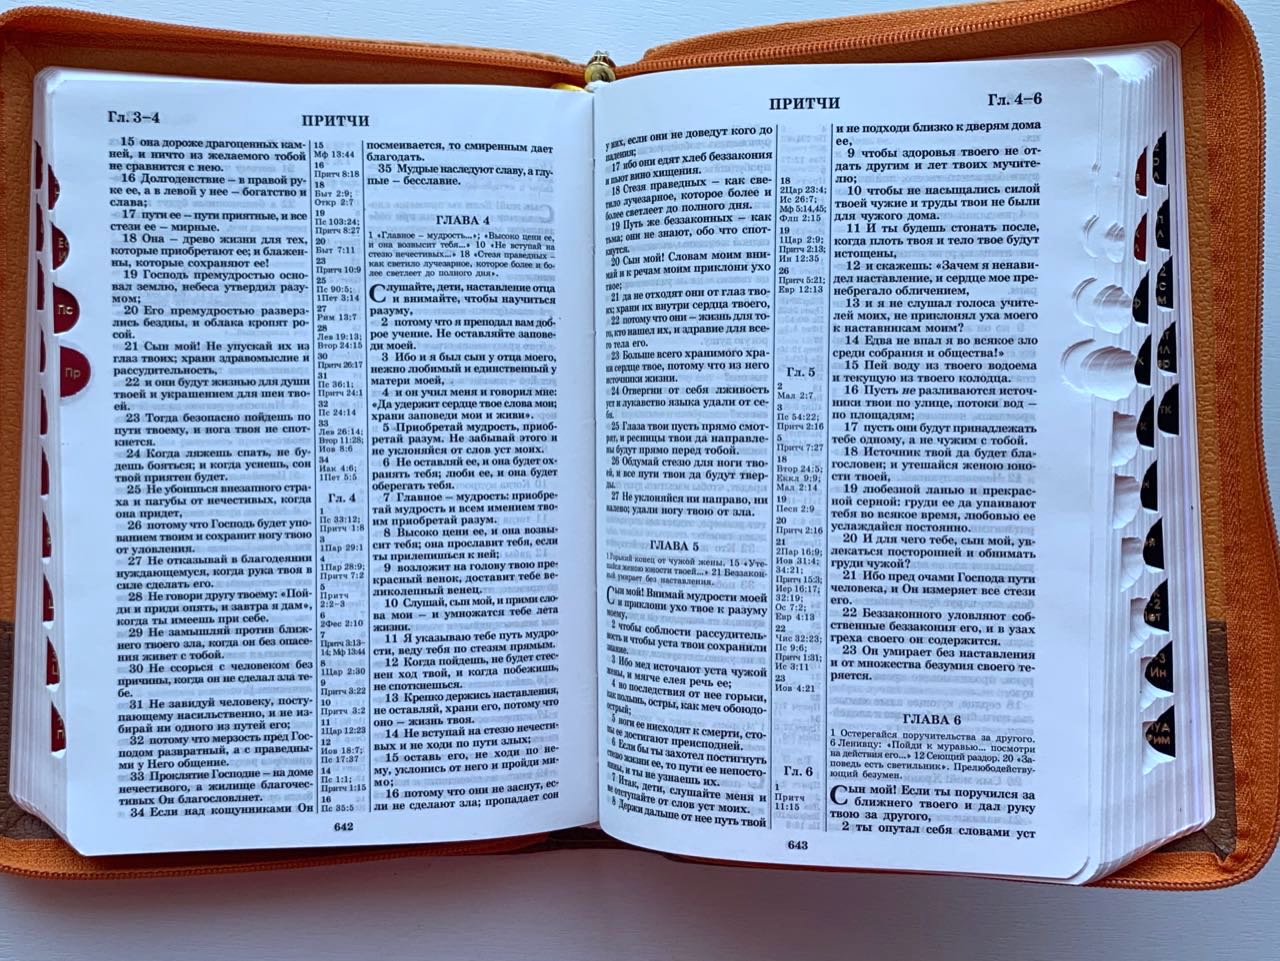 БИБЛИЯ 046zti формат, переплет из искусственной кожи на молнии с индексами, надпись золотом "Библия", цвет светло-коричневый/коричневый, средний формат, 132*182 мм, цветные карты, шрифт 12 кегель